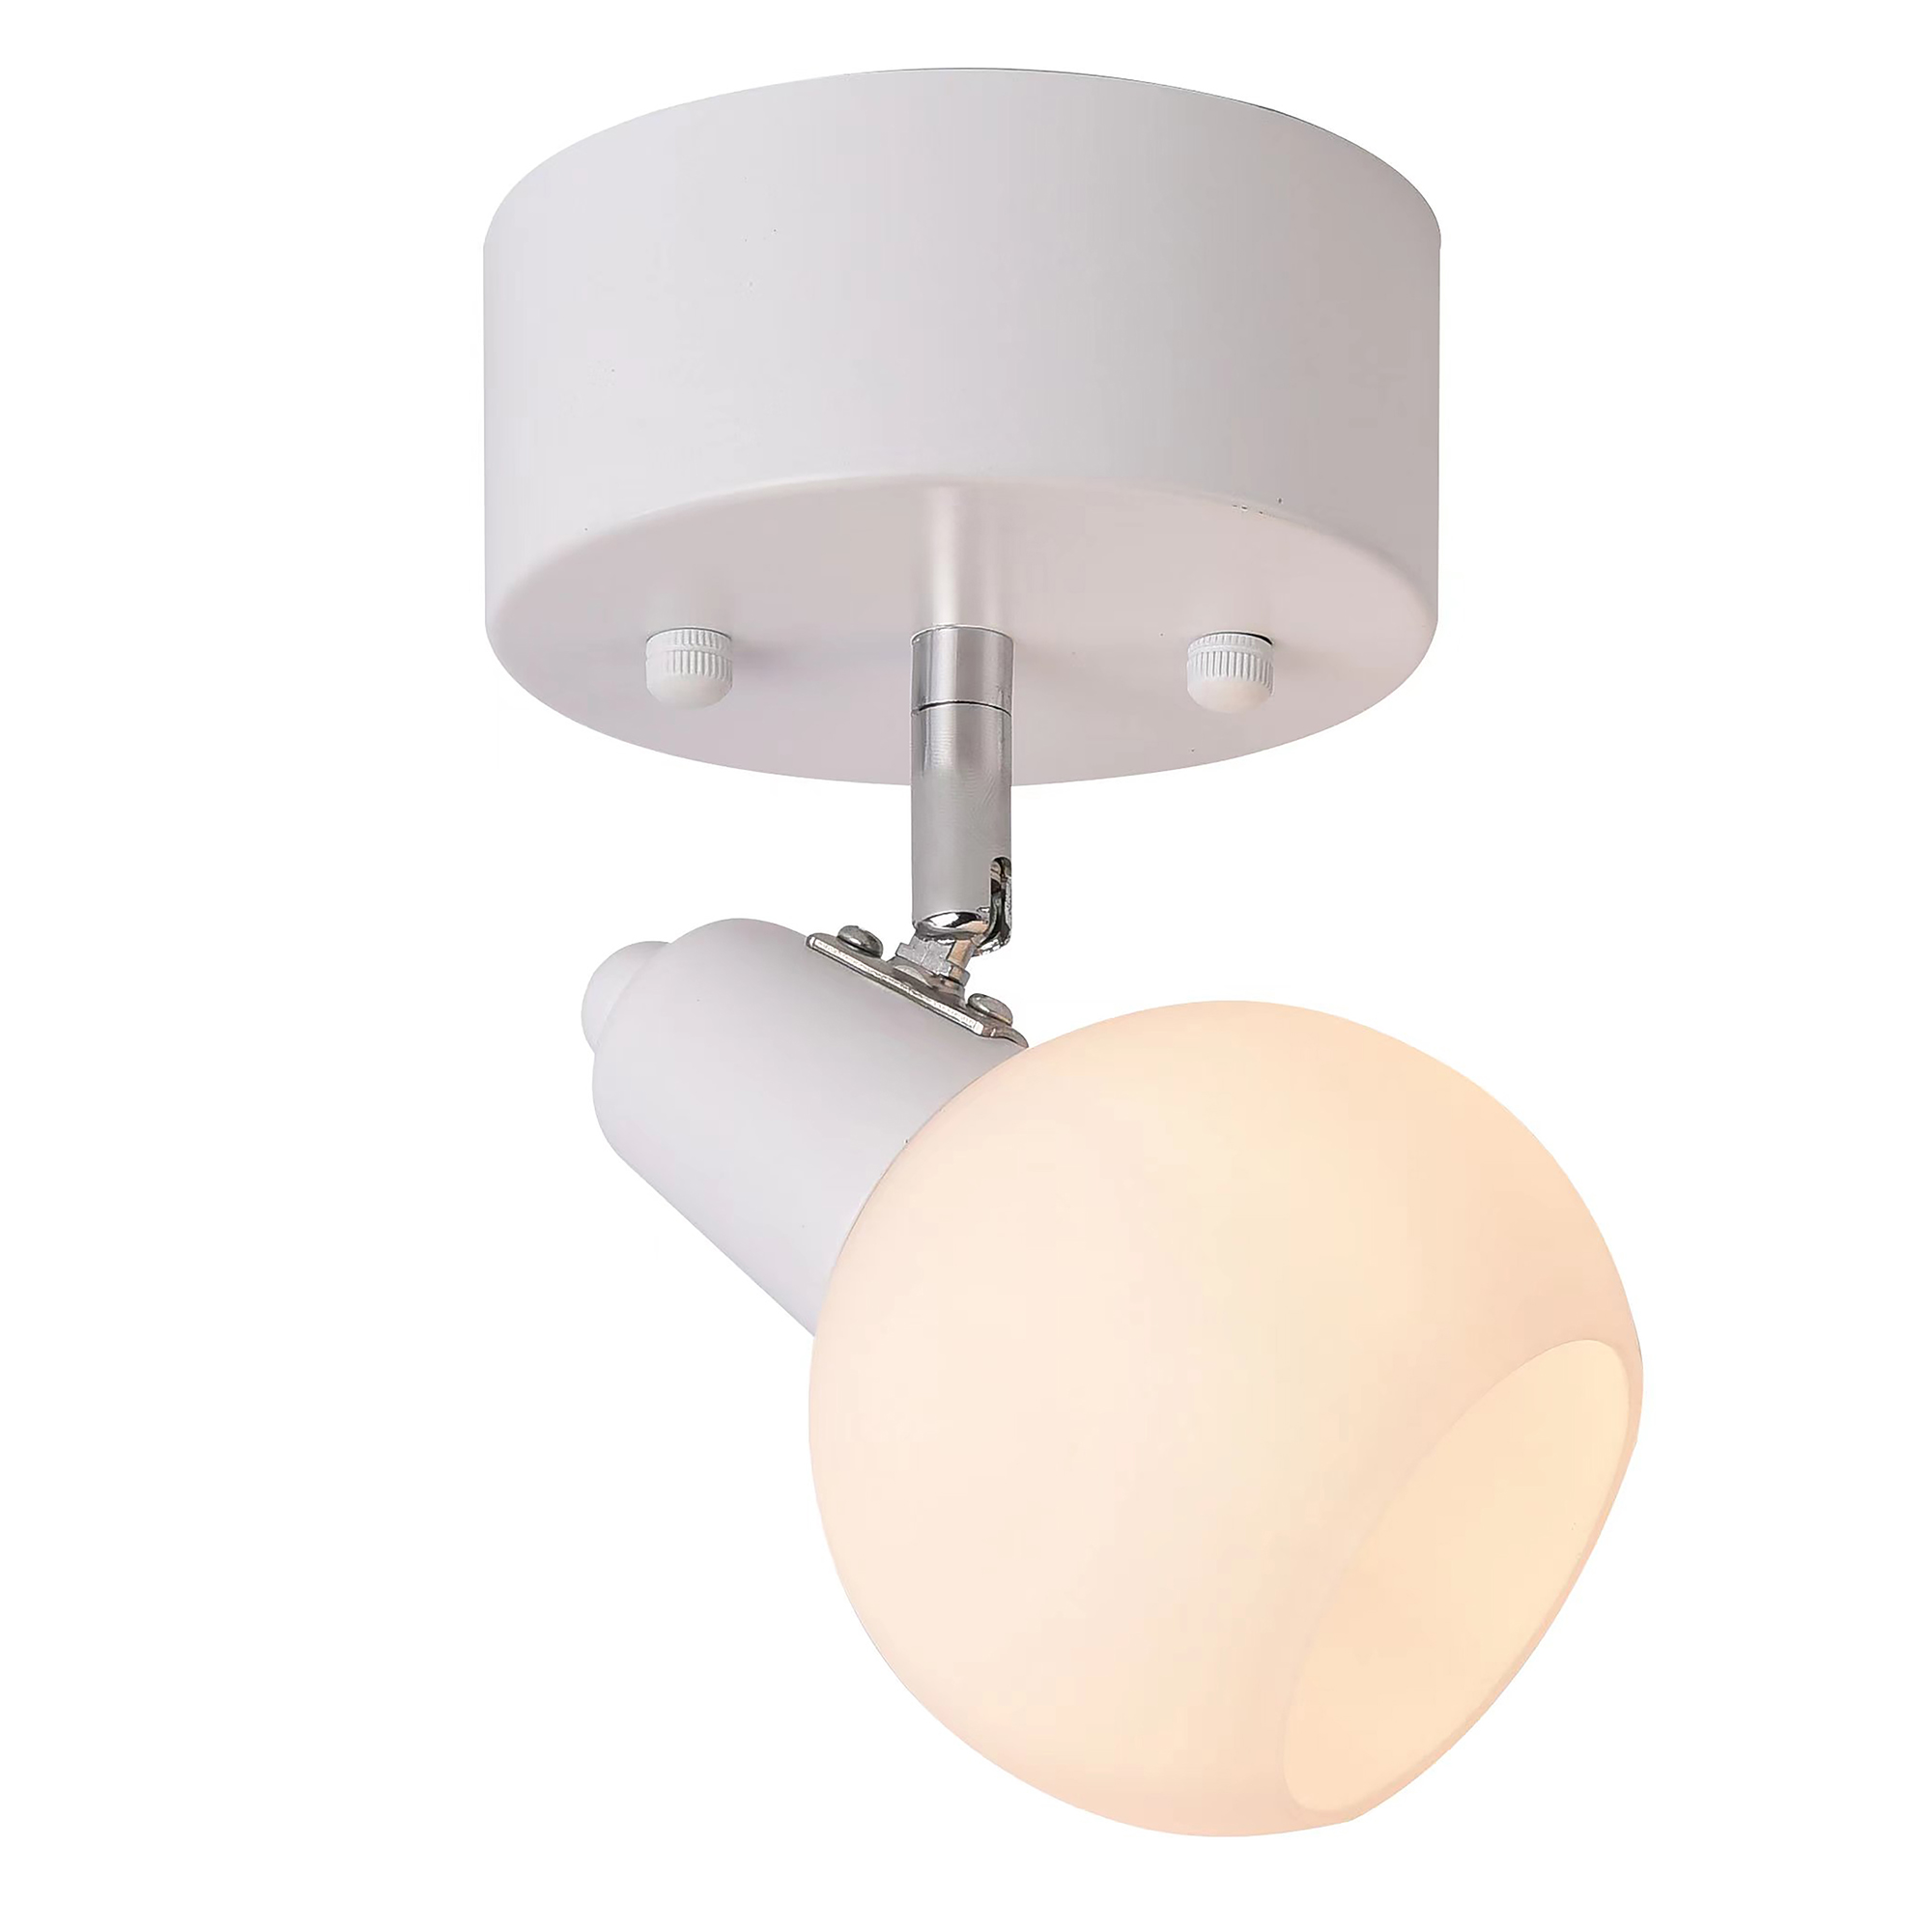 Ceiling lamp FocusLight KIIRA 1-osa Ø12cm, white/chrome